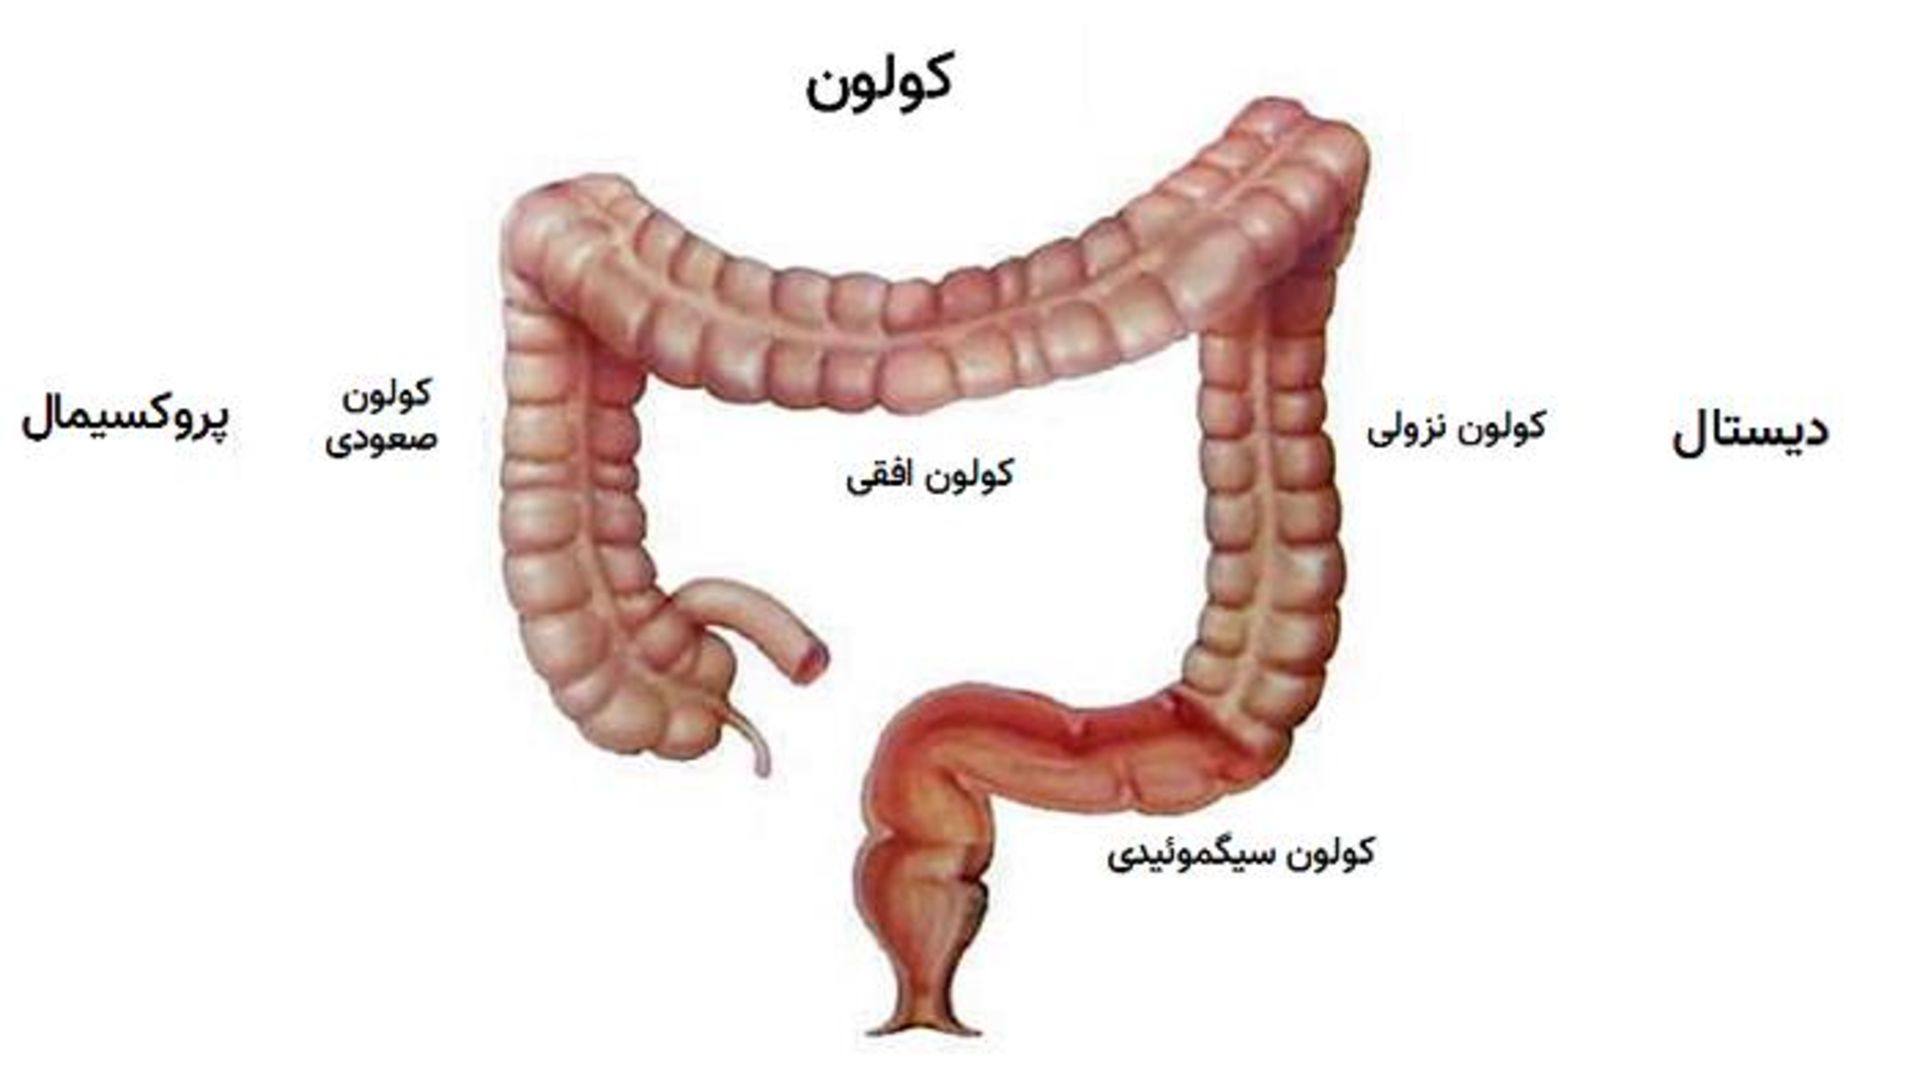 قسمت های مختلف کولون یا روده بزرگ